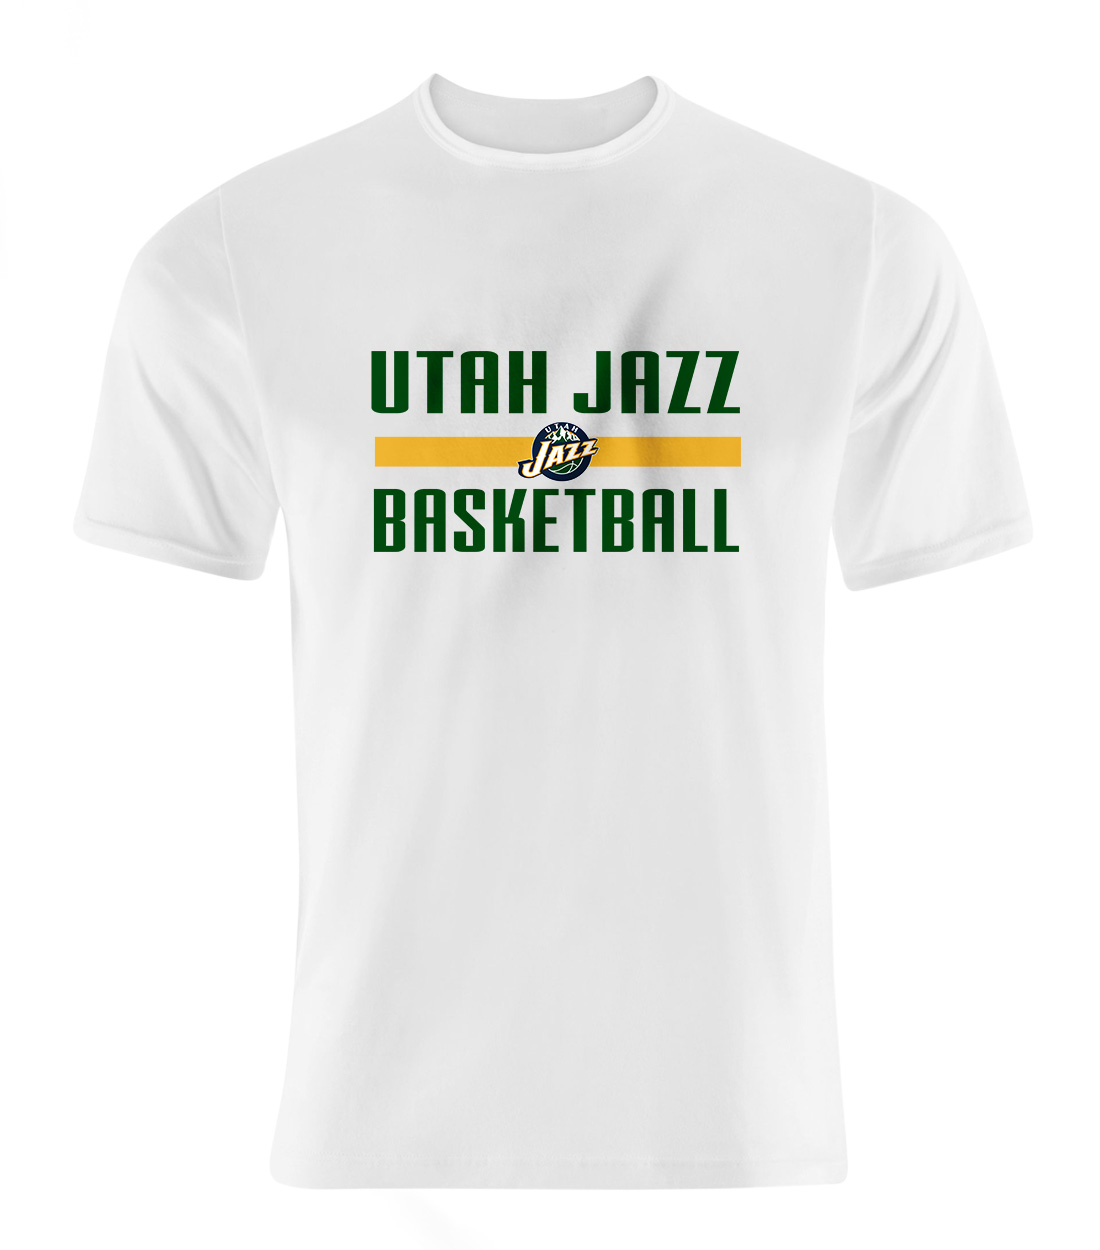 Utah Jazz Basketball Tshirt (TSH-WHT-917)